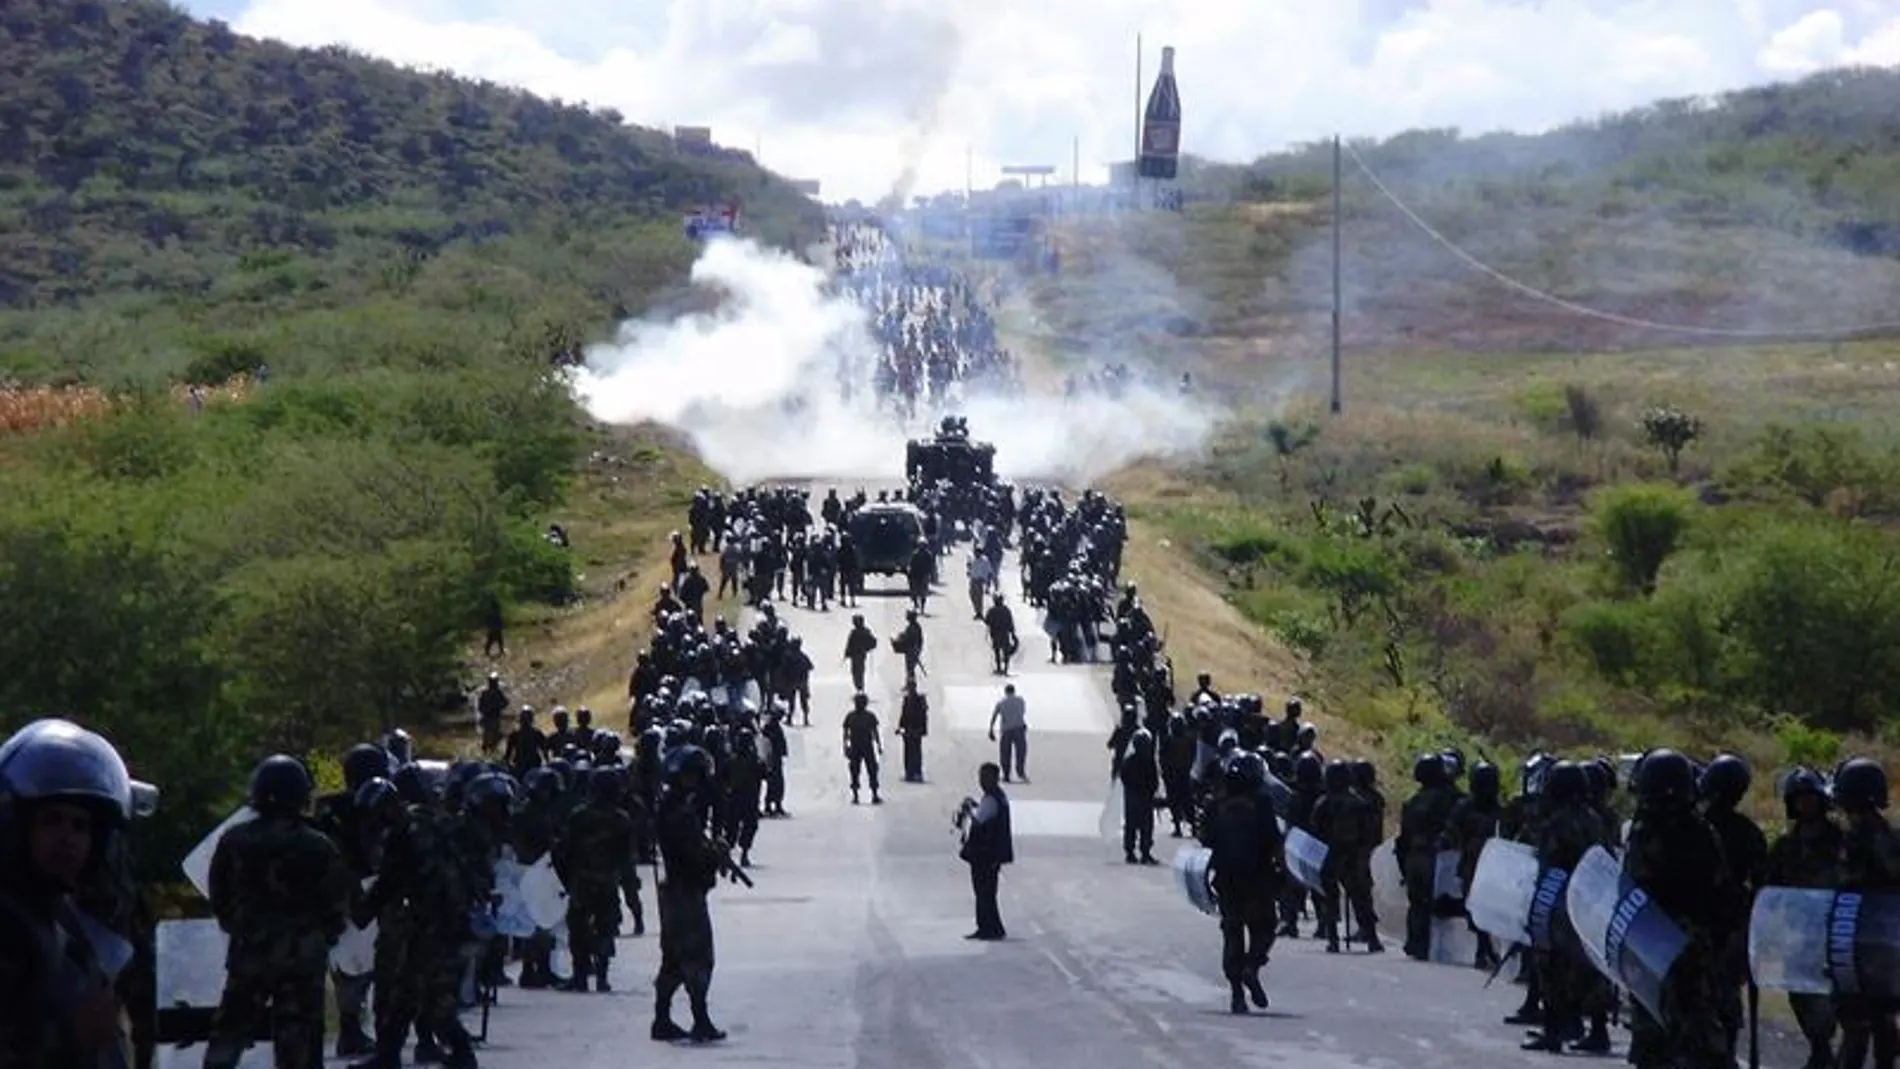  El documental peruano "When two worlds collide" muestra la "parte más humana" de las protestas violentas contra la explotación petrolera 